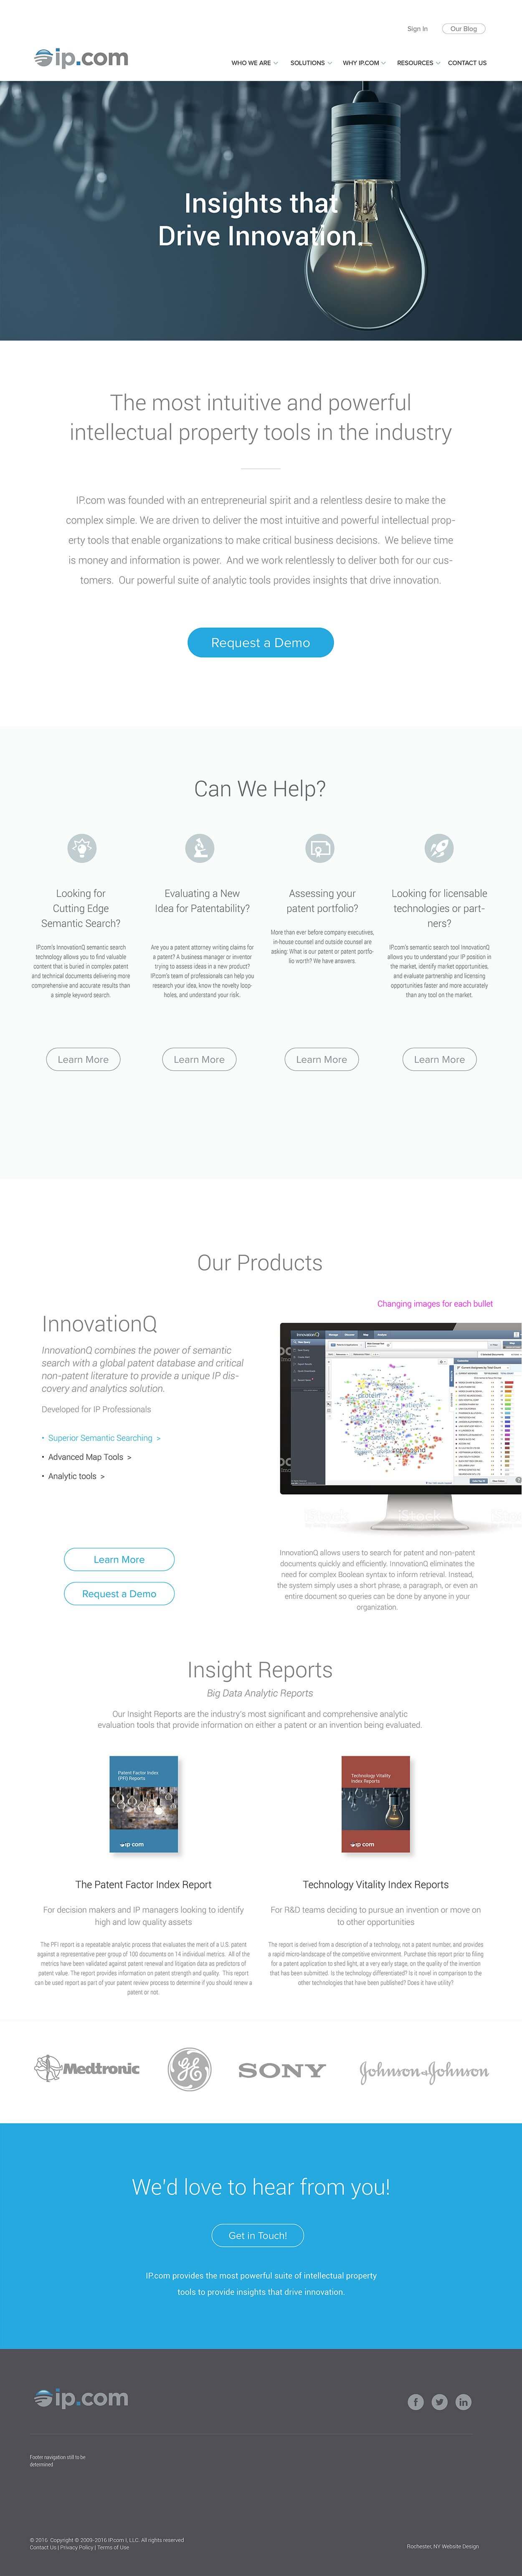 Portfolio ip best website design examaples 1